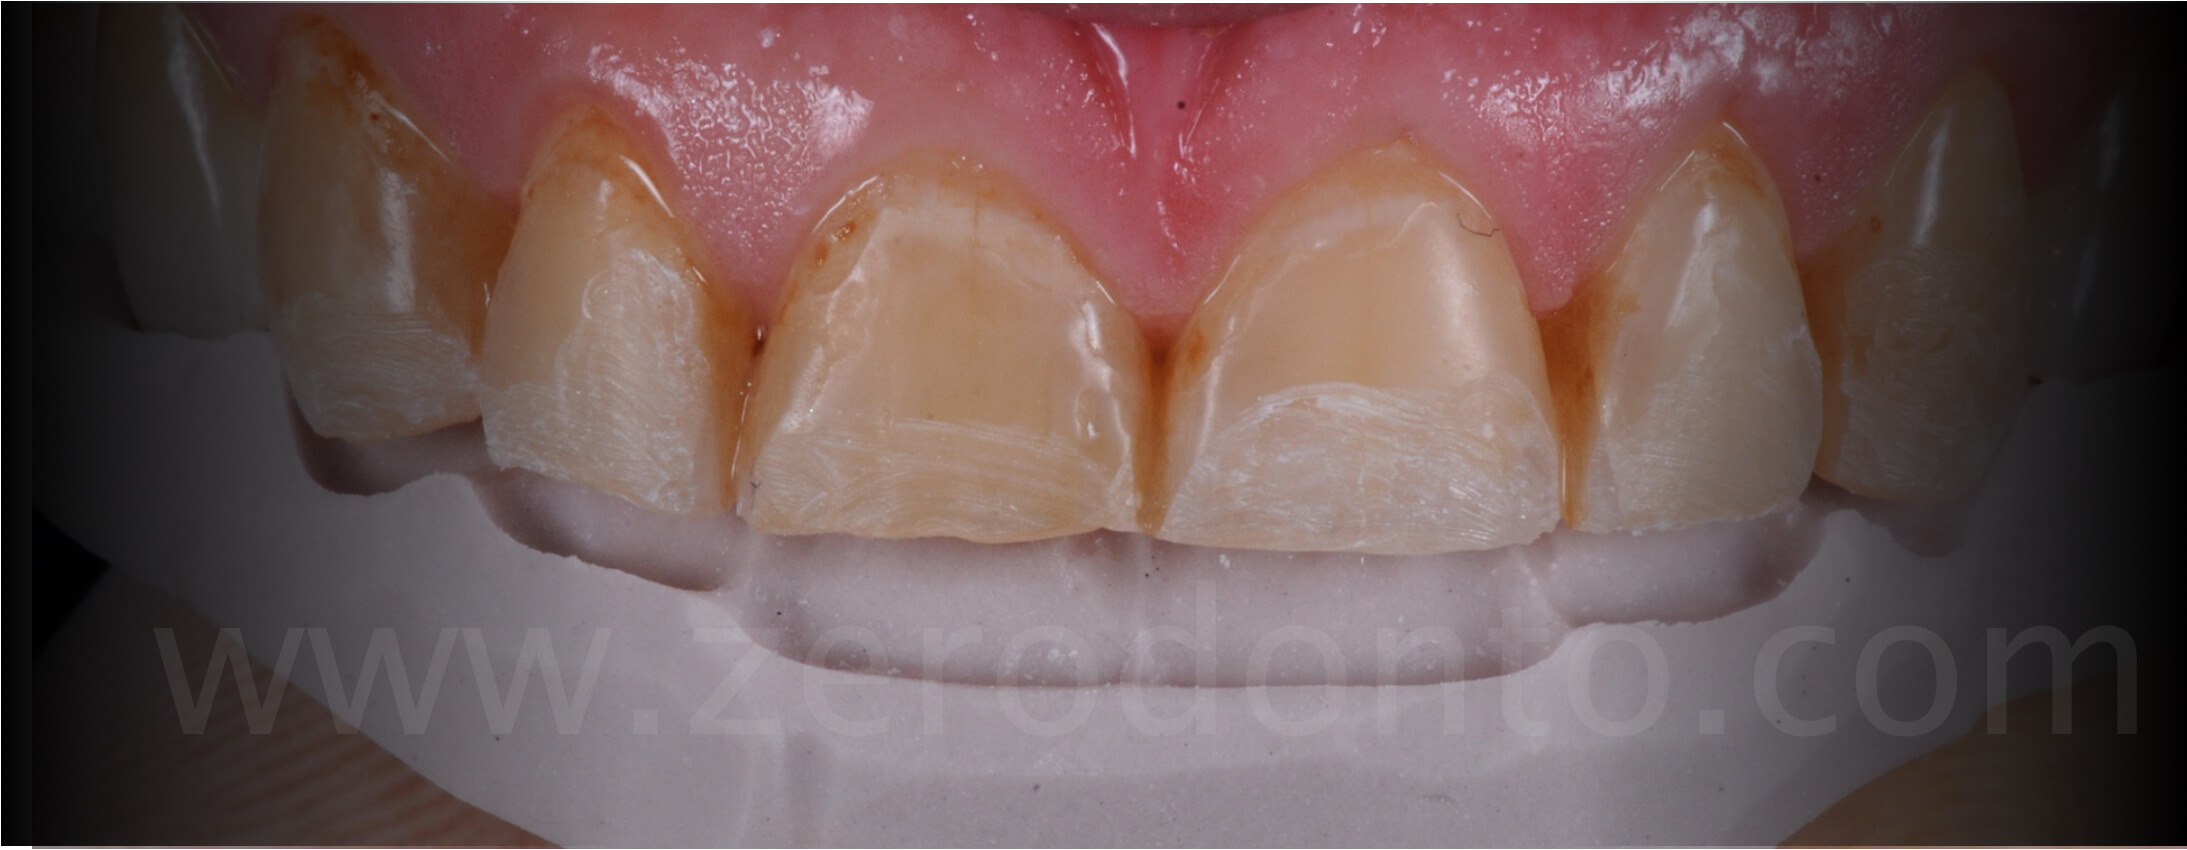 mock-up dental erosion